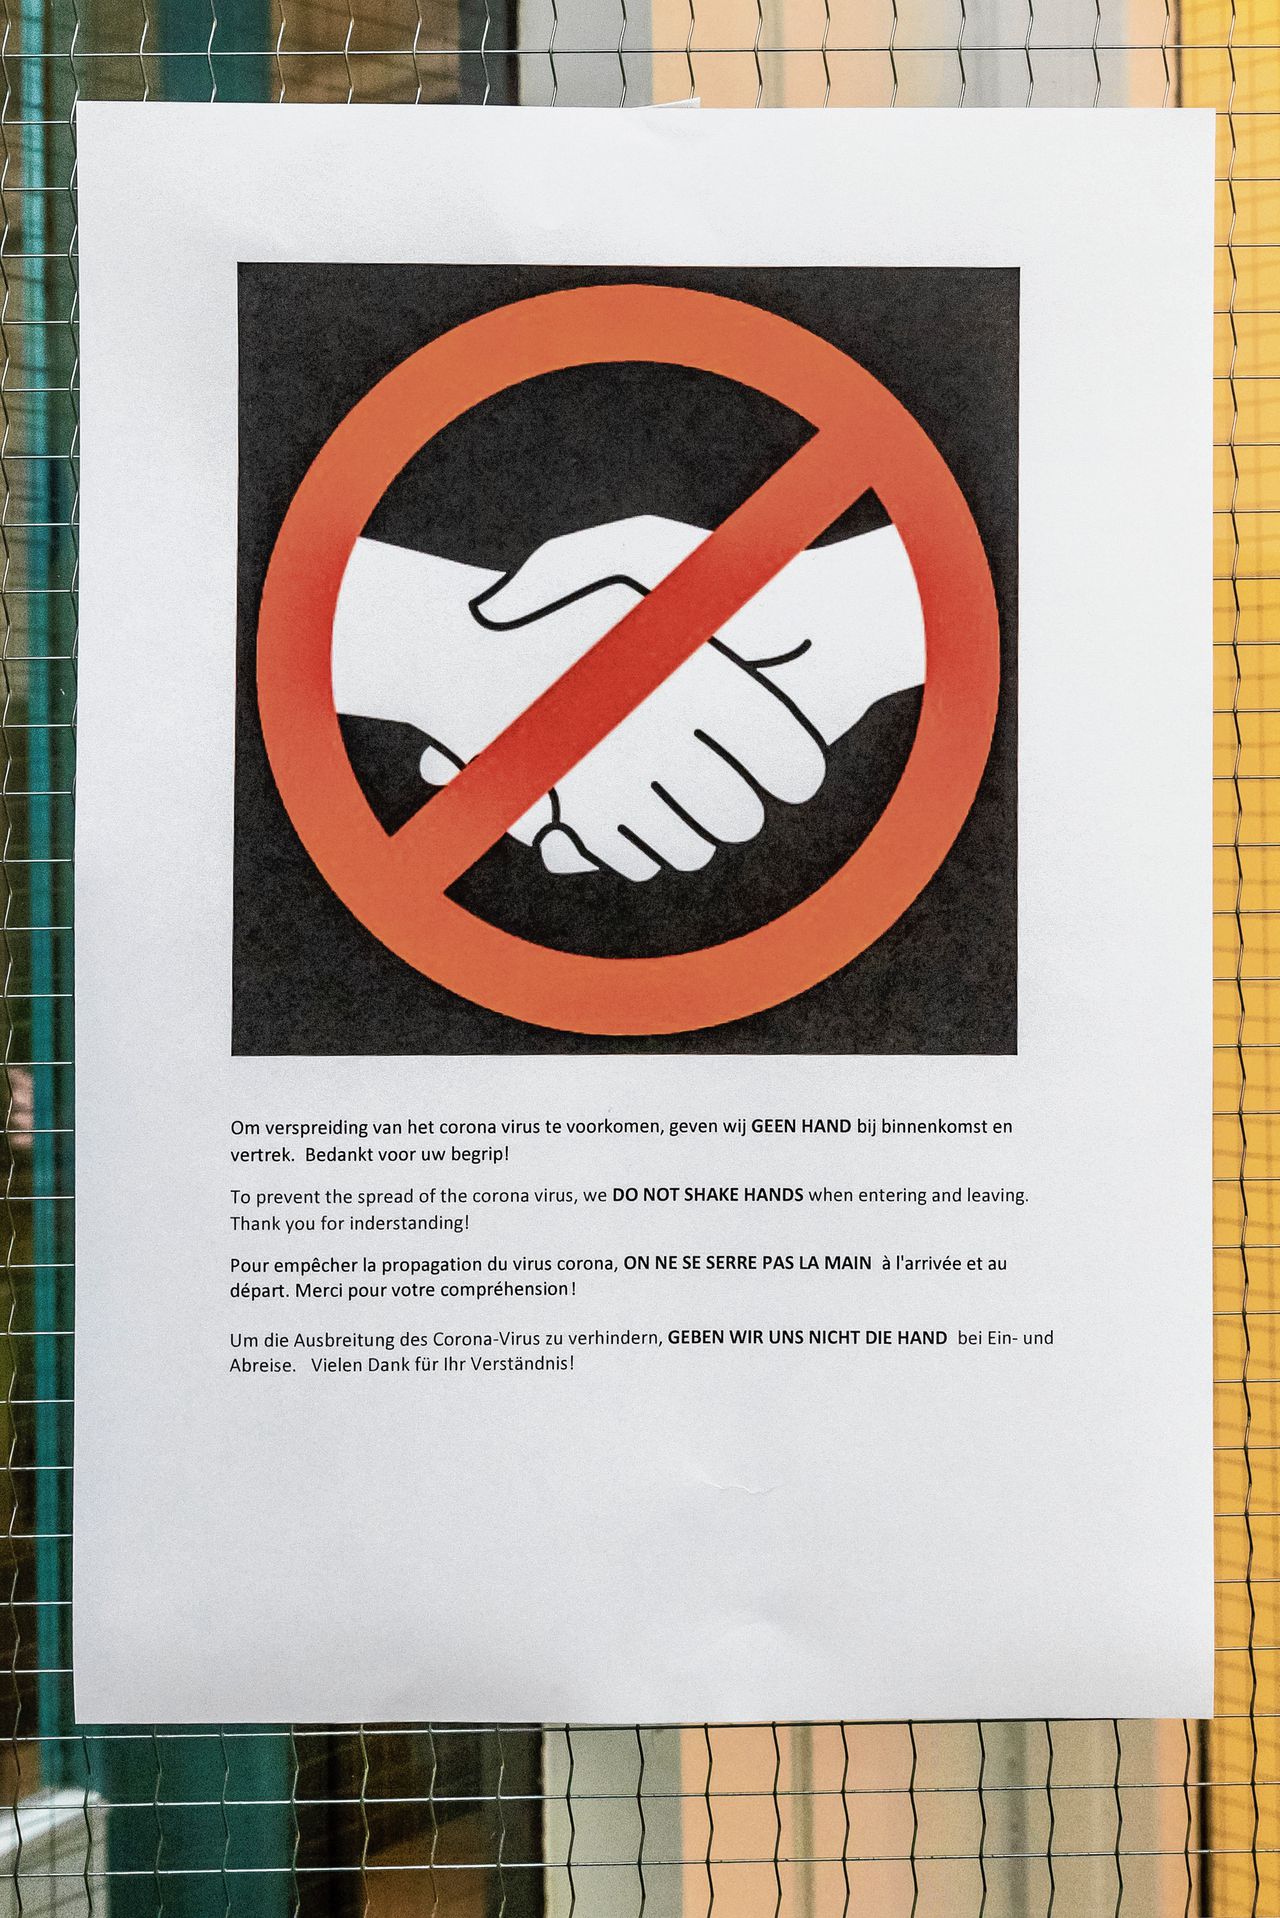 Op veel plekken in Nederland hangen affiches waarin wordt opgeroepen geen handen meer te schudden.